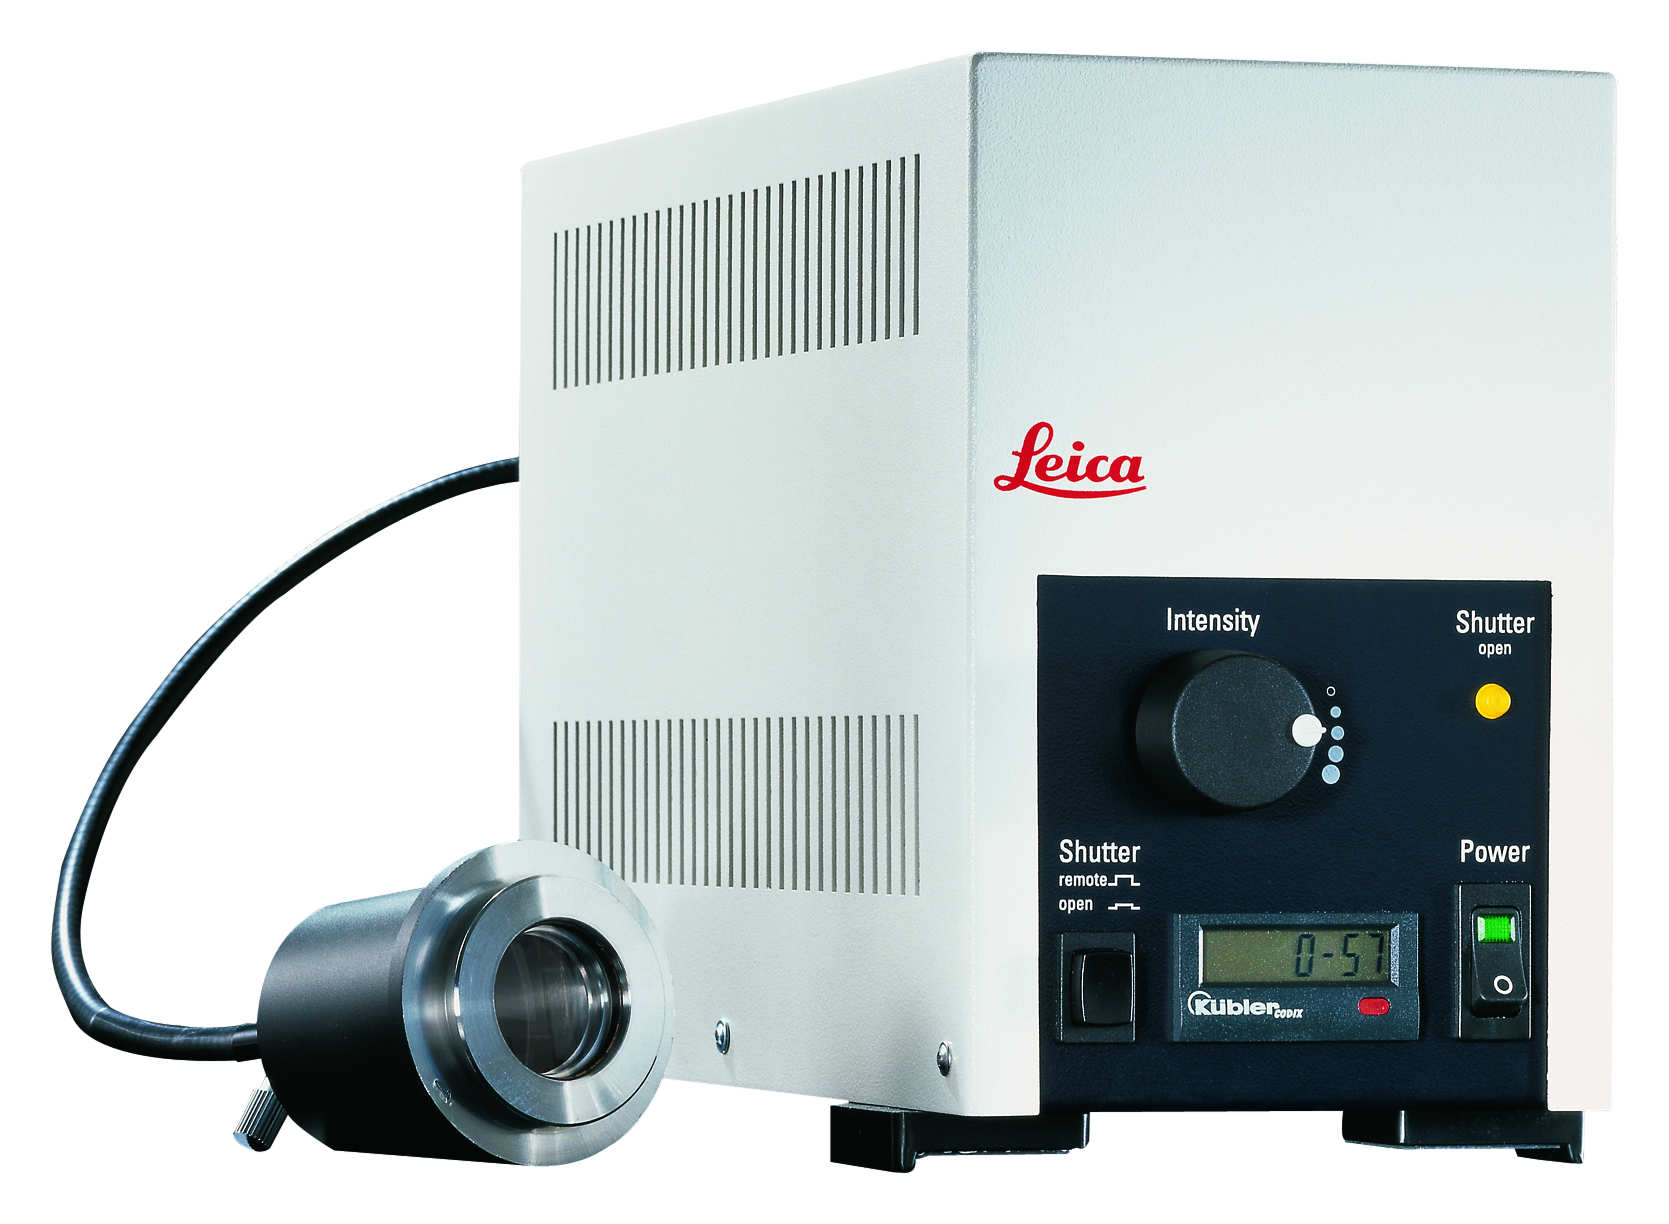 El Leica EL6000 es una mejora ideal y asequible para la obtención de imágenes de fluorescencia.